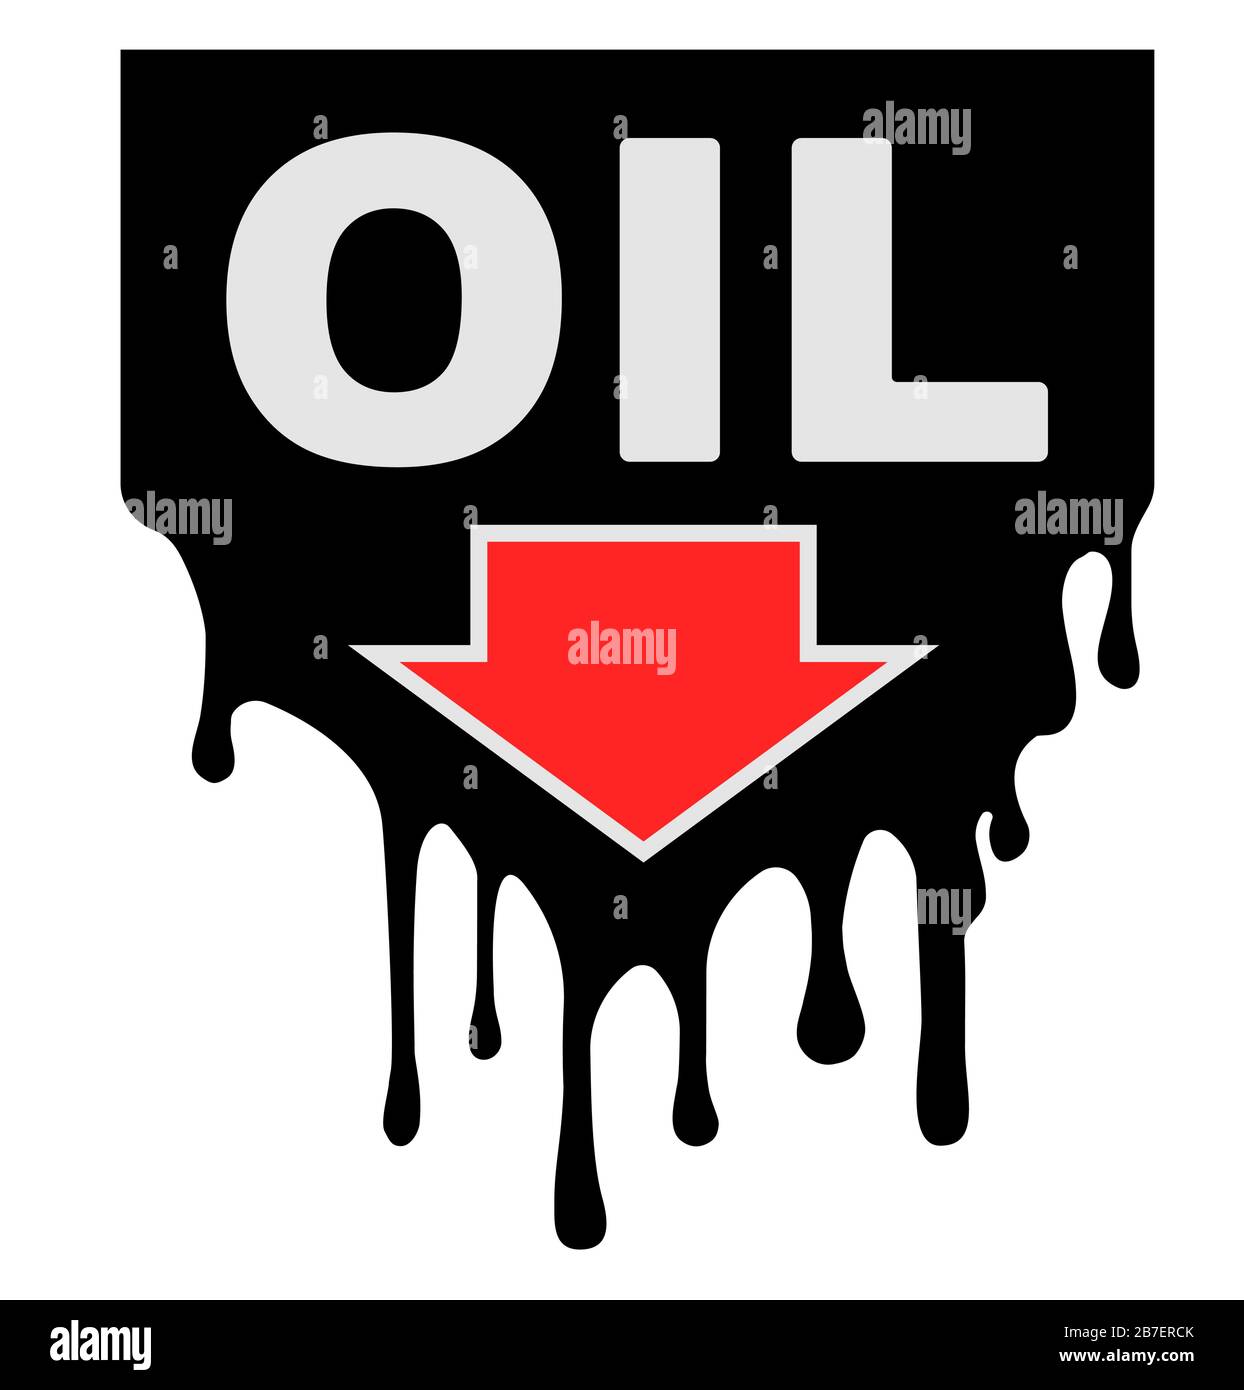 Die Ölpreise werden mit Tropfen und Pfeil nach unten gestaltet, was einen Rückgang der Ölpreise anzeigt. Stock Vektor